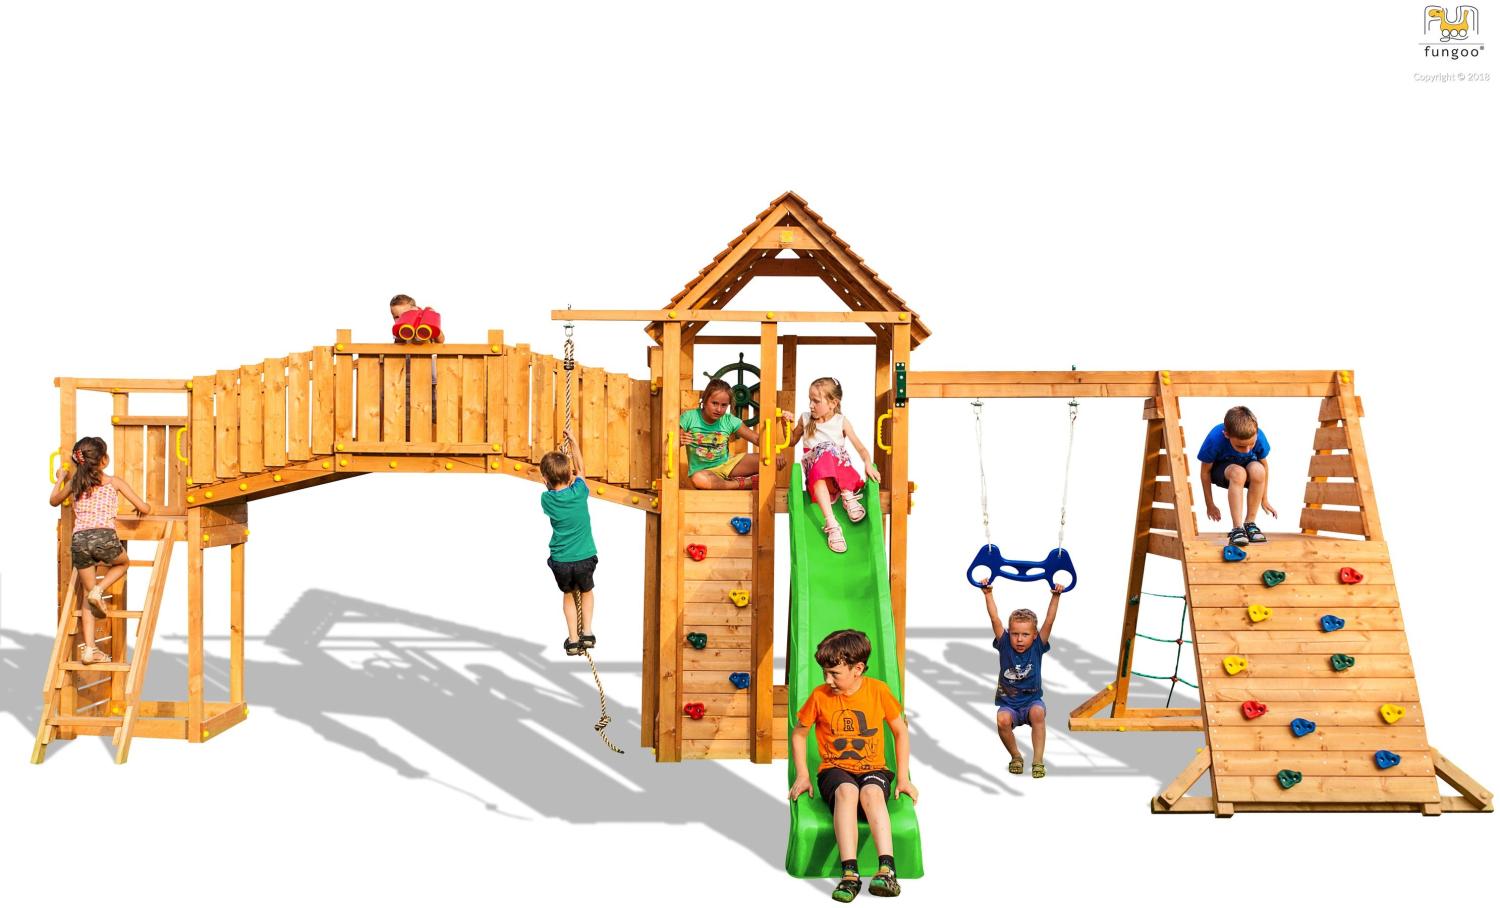 Spielturm Fungoo Maxi Set Fun Gym inkl. Rutsche, Schaukel, Kletterwände und Brücke Bild 1